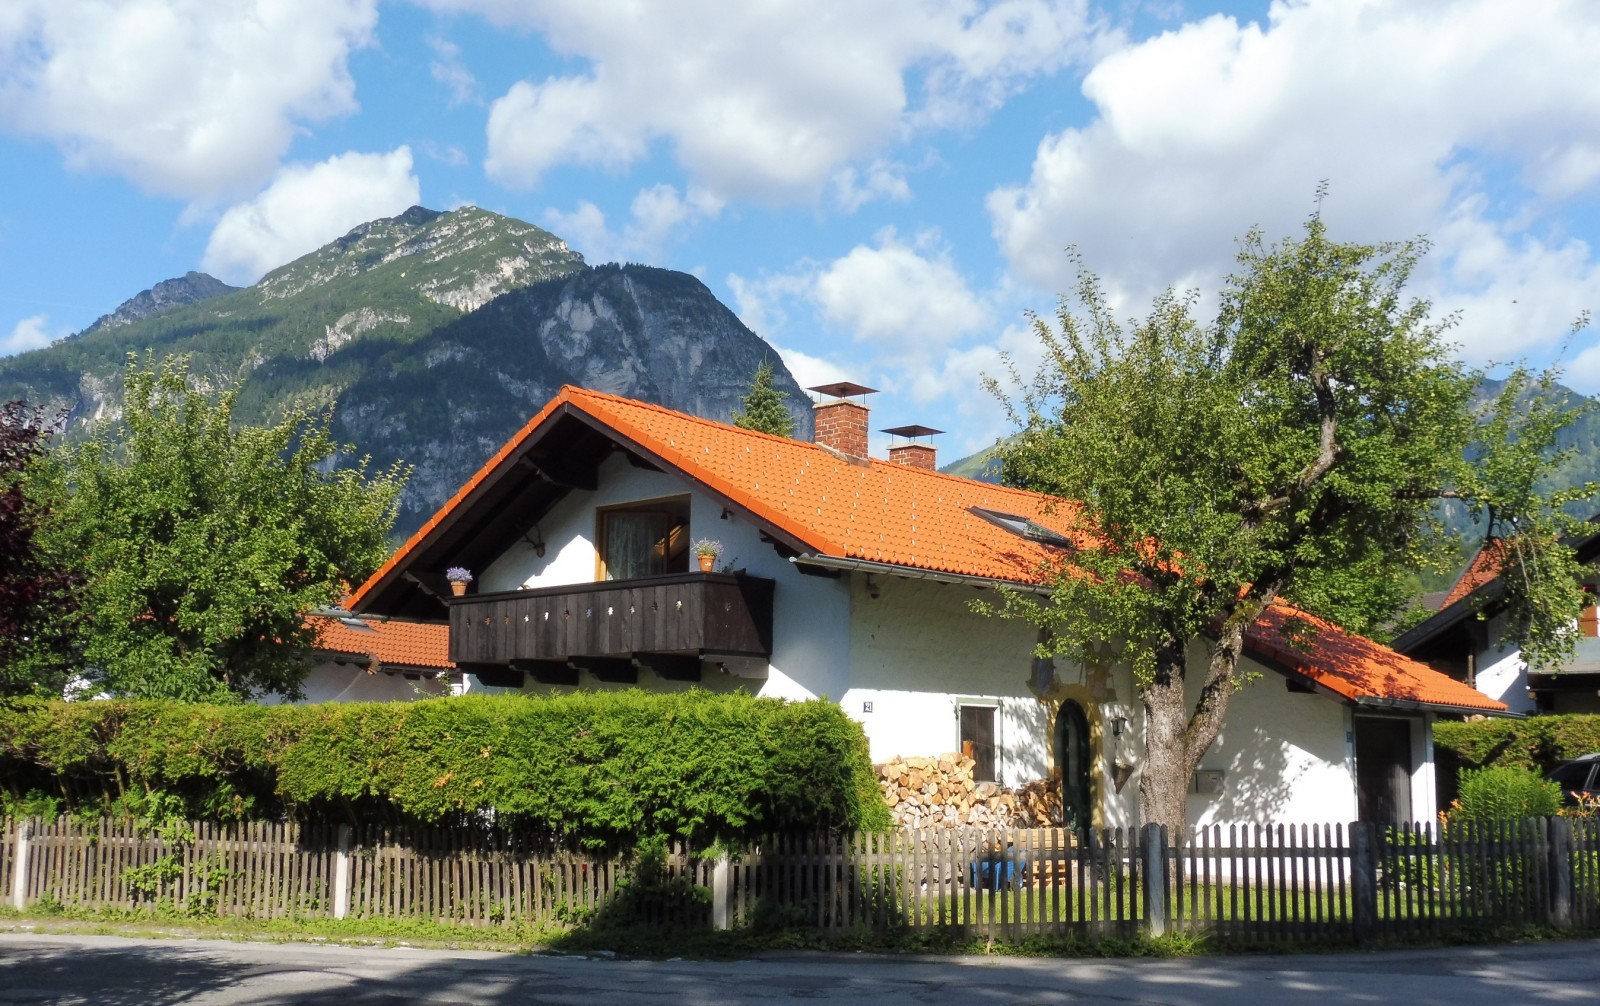 Ferienwohnung Greif in GarmischPartenkirchen Objekt 5141